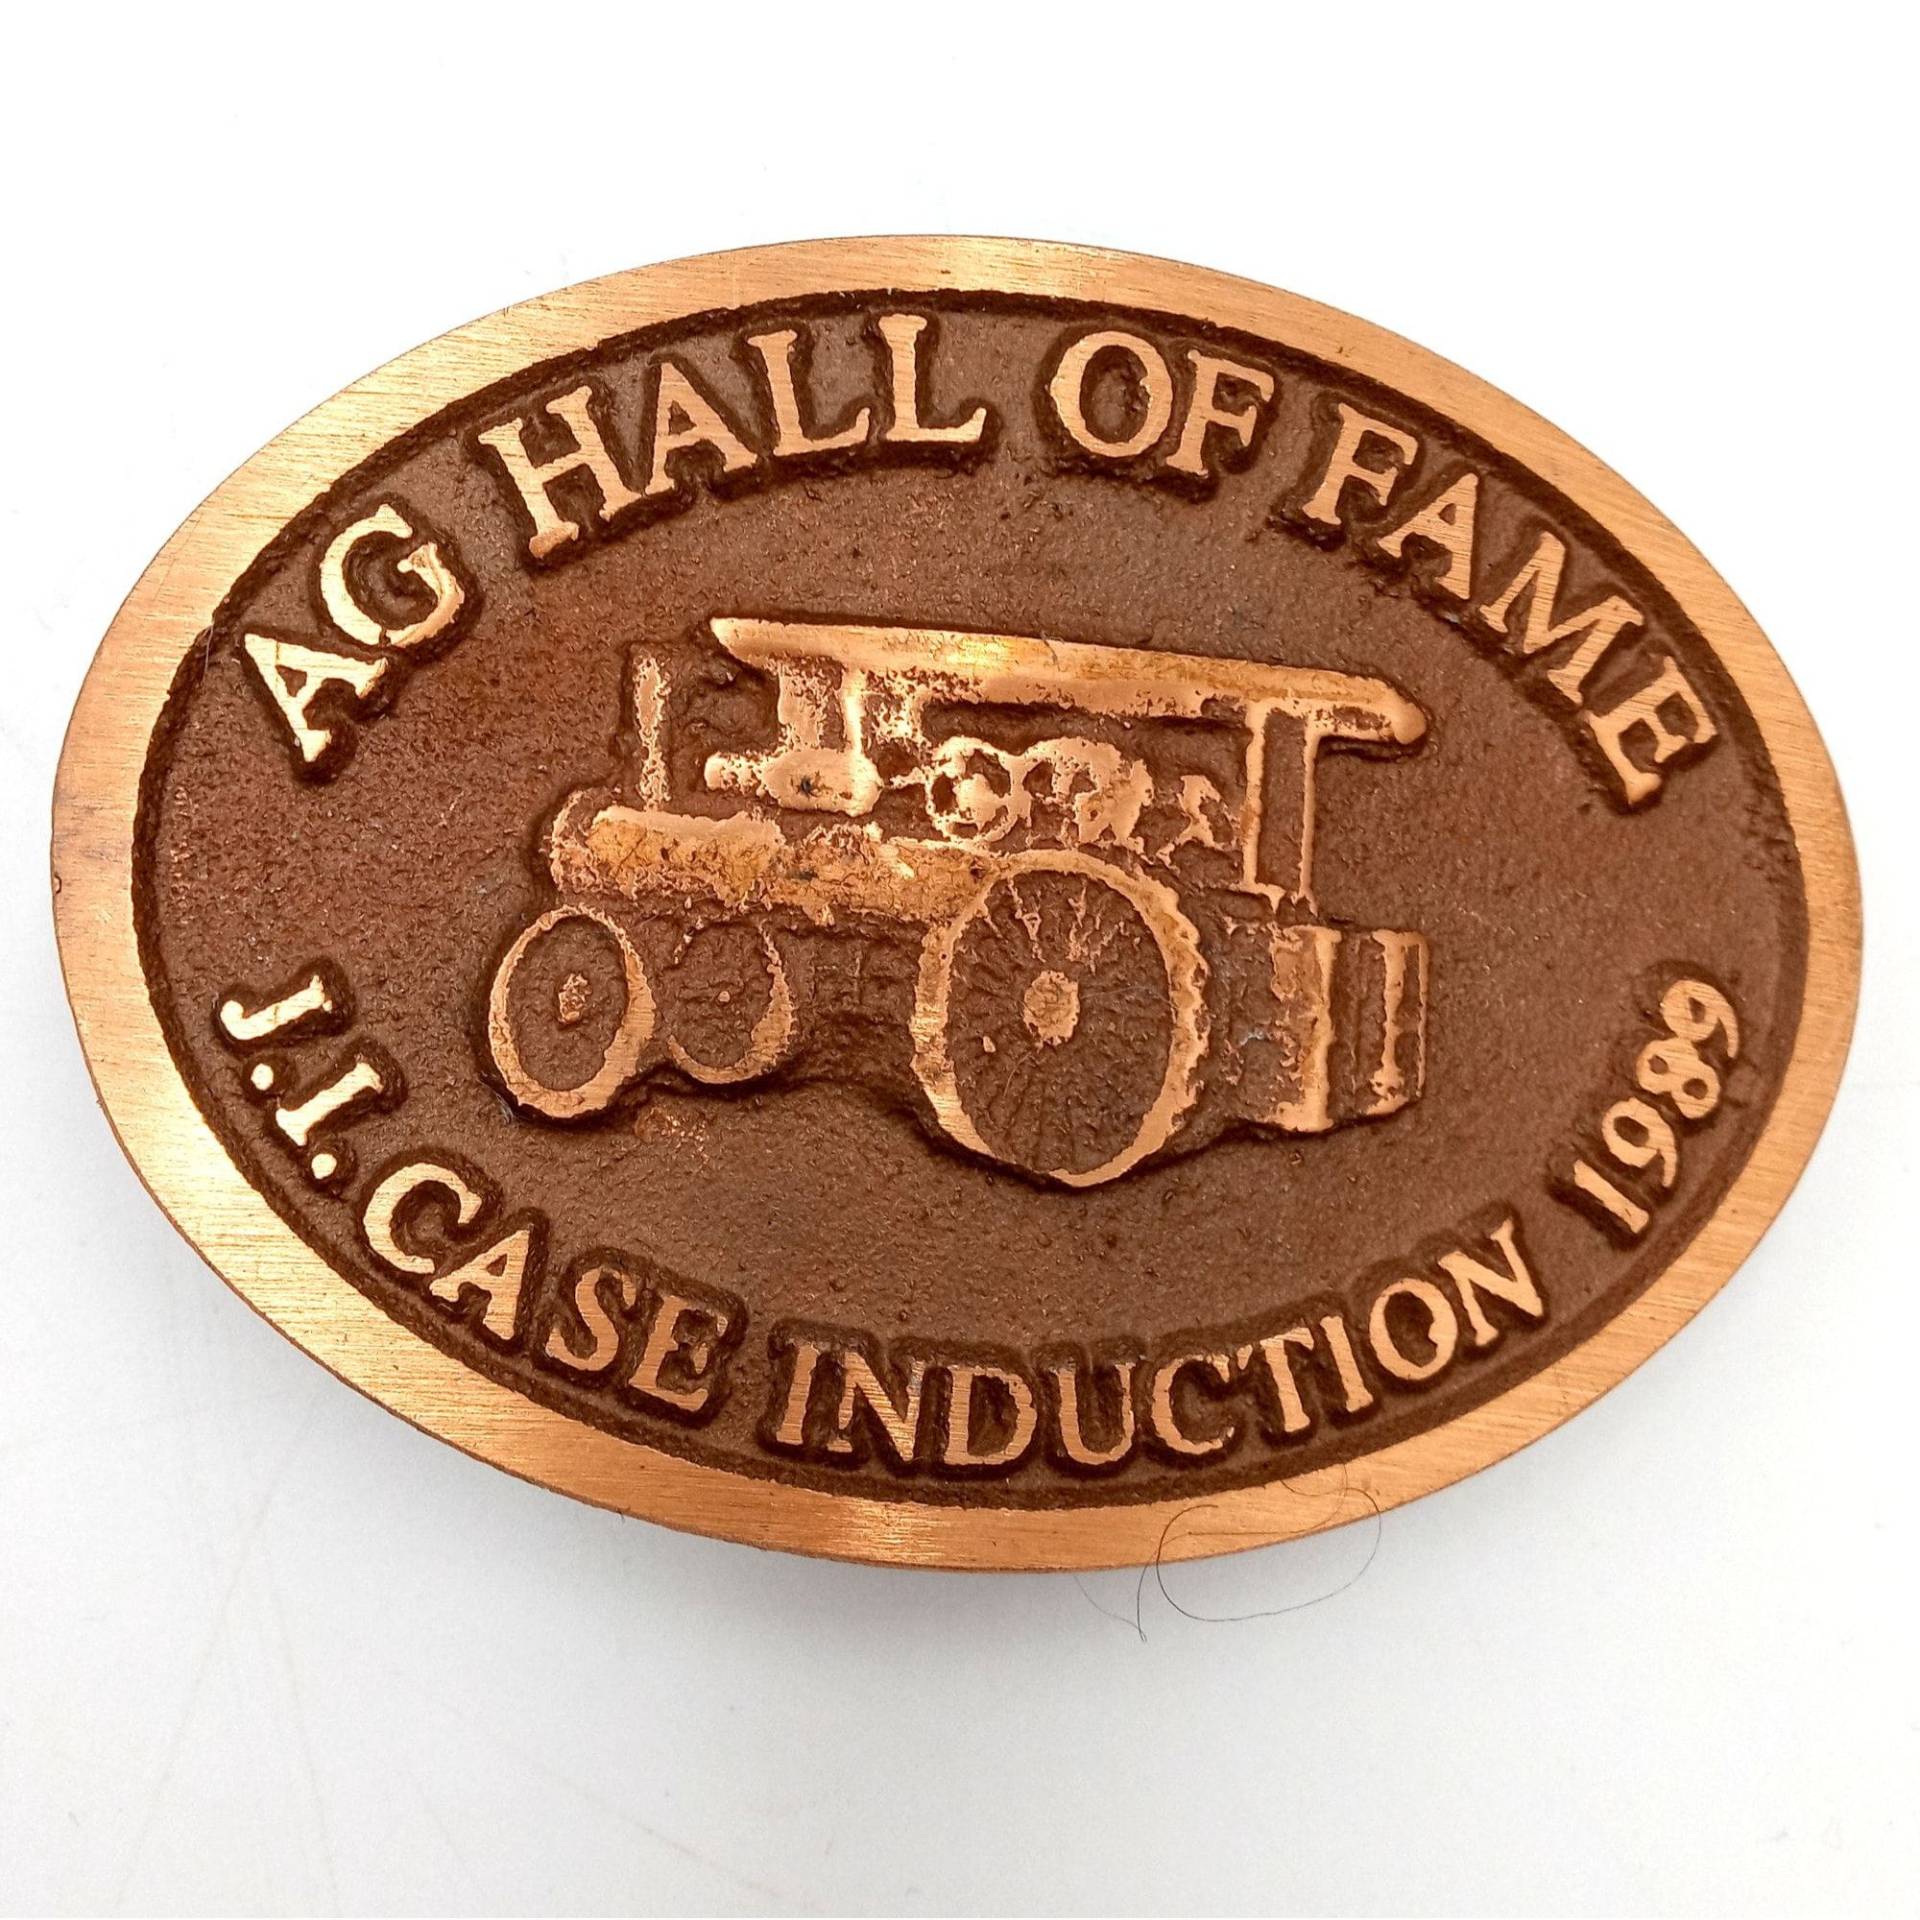 Koffer Traktor Gürtelschnalle Ag Hall Of Fame 1989 Limited Edition Landwirtschaft Bauernhof von honeyblossomstudio